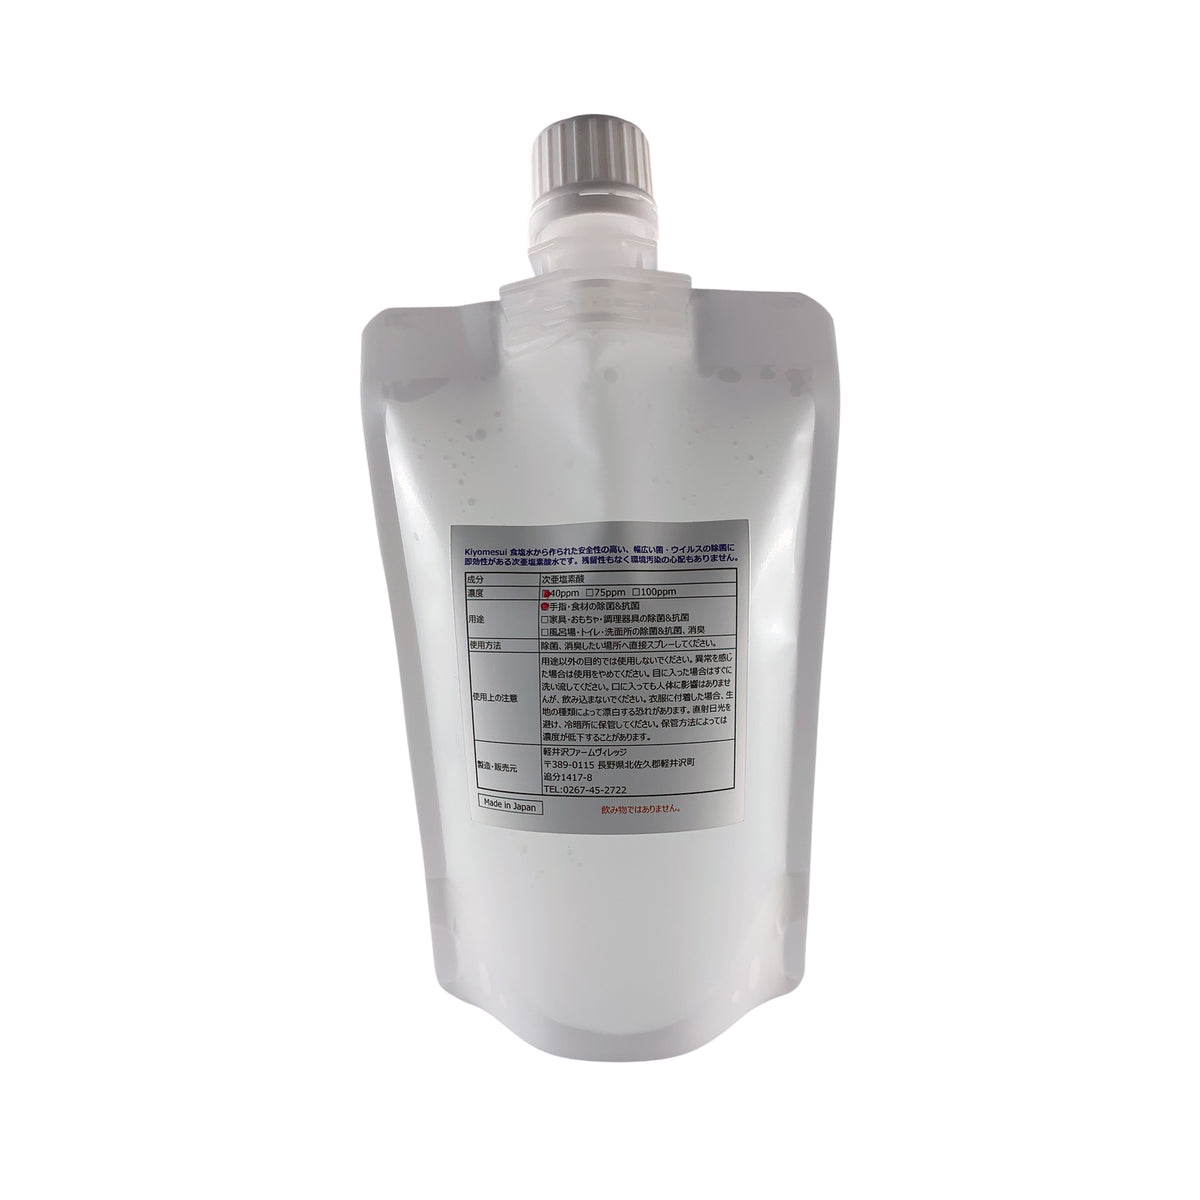 &lt;transcy&gt;[Kiyomesui] (hypochlorite water) H-bien Refill pouch 180㎖ 40ppm&lt;/transcy&gt;